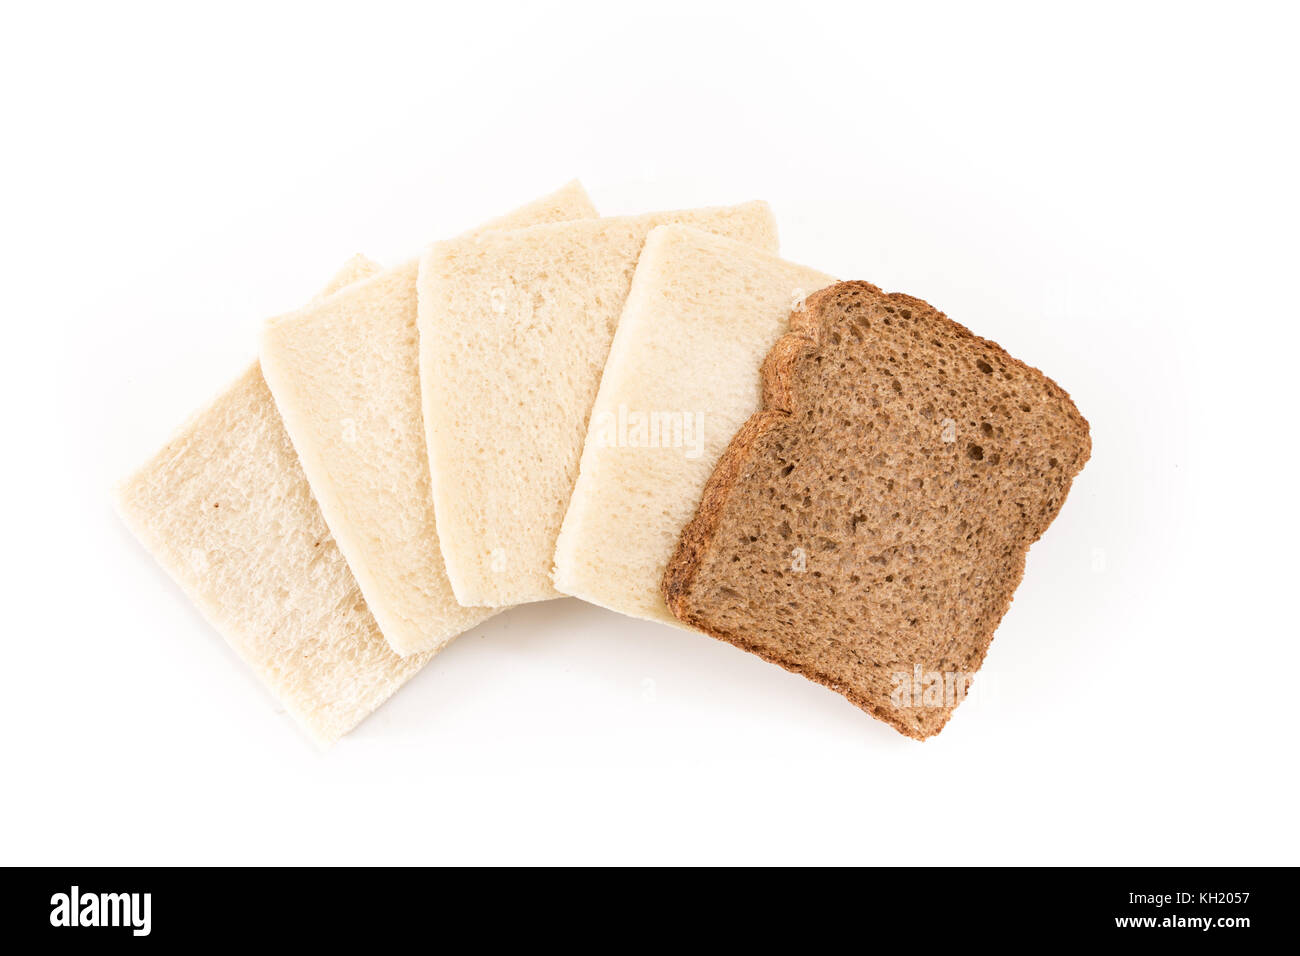 Pas de sandwich blanc croûte les tranches de pain avec l'un d'eux mêmes brown, sur fond blanc. Banque D'Images